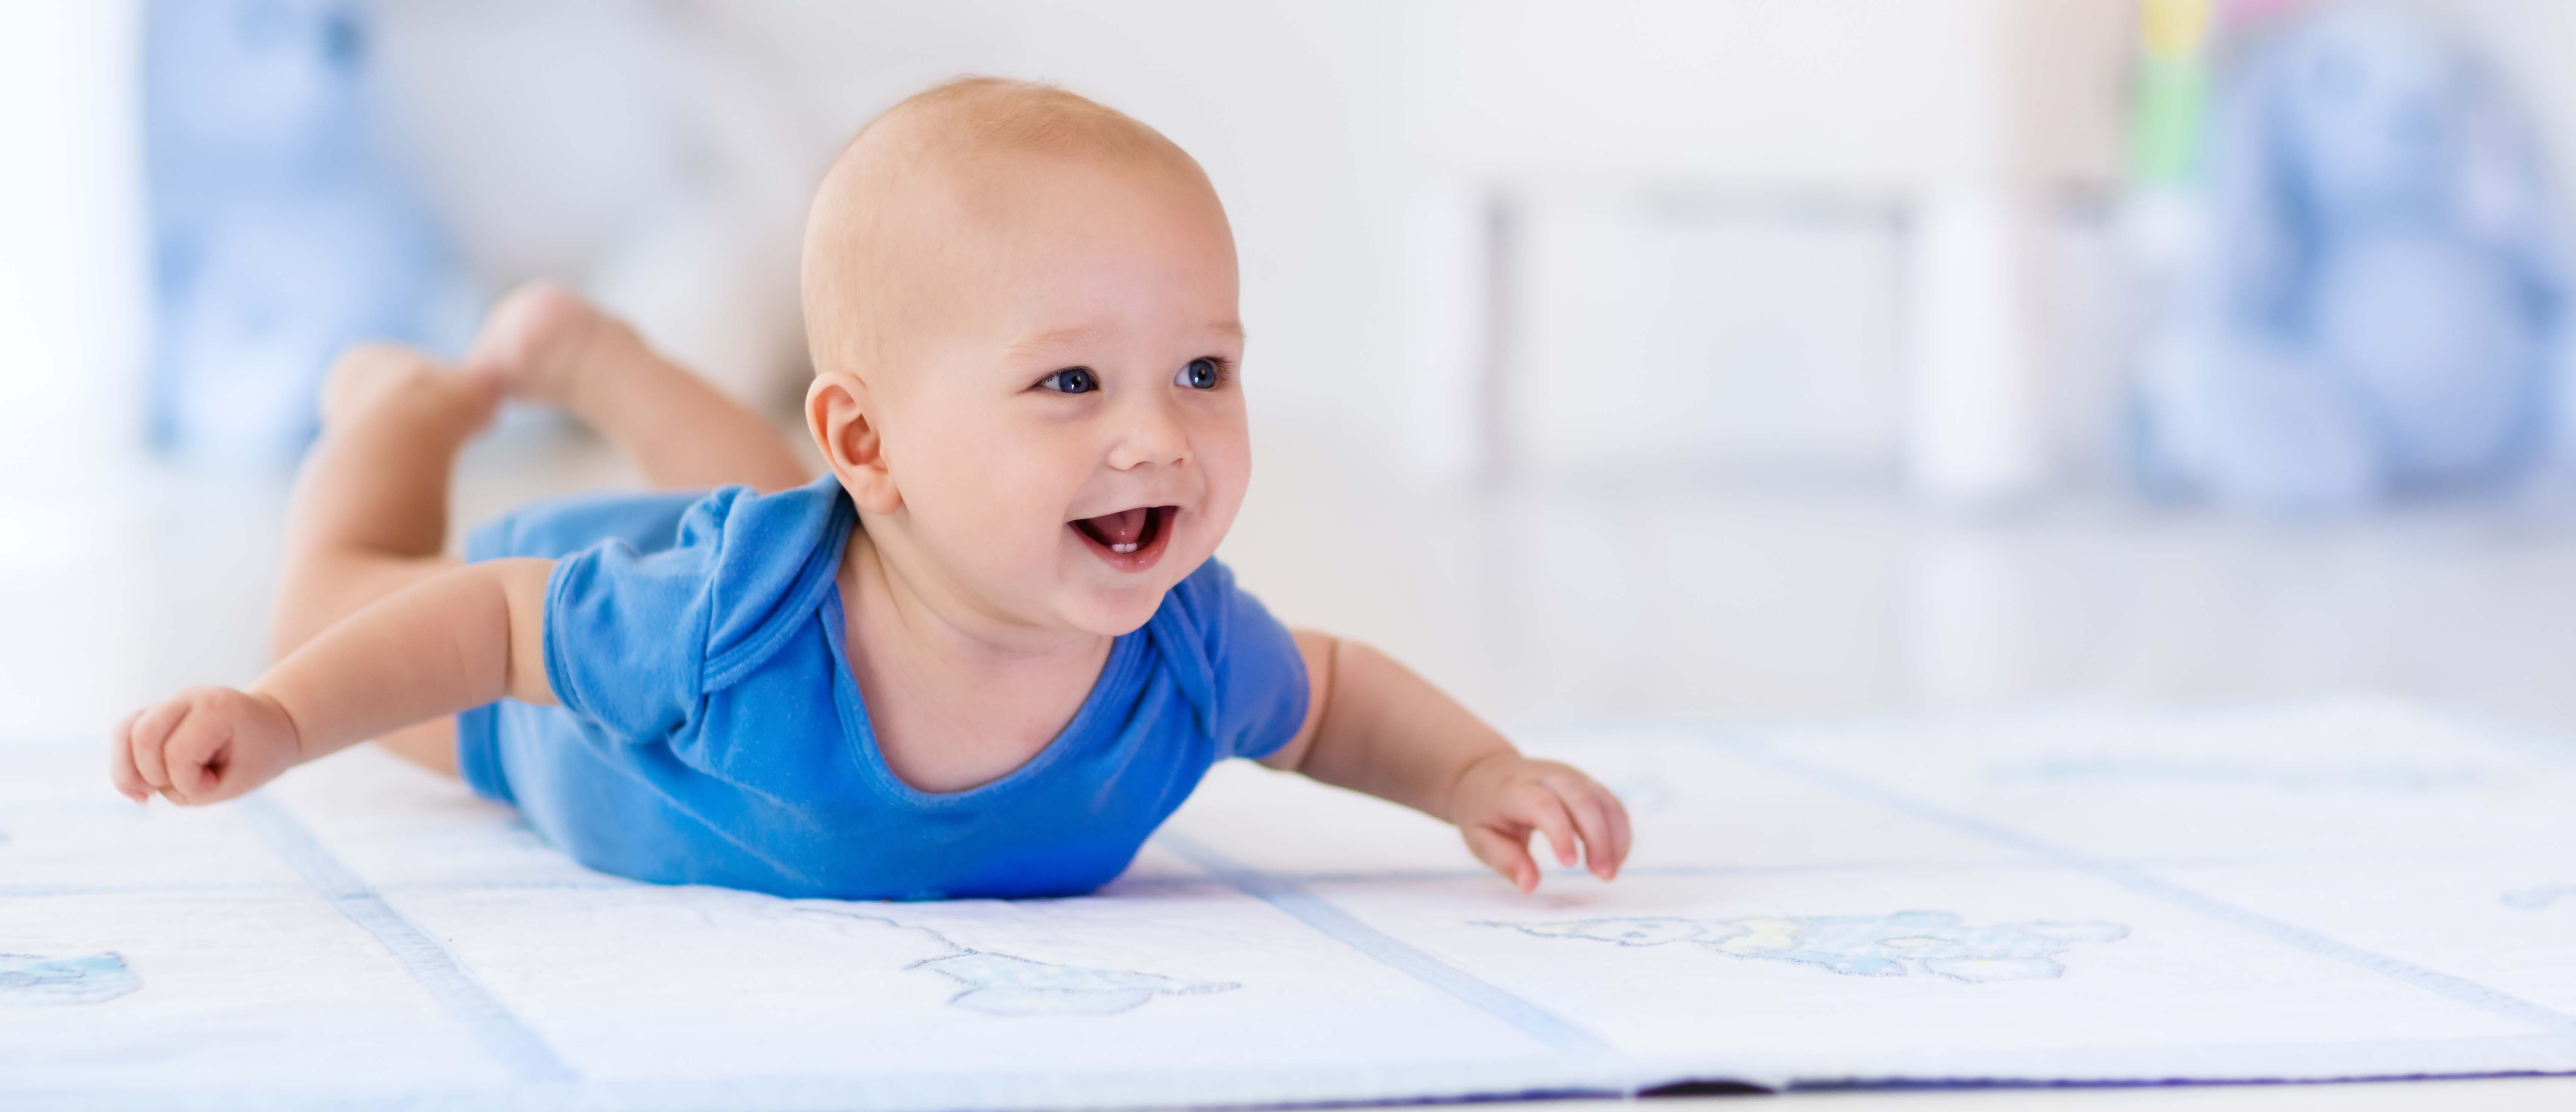 Littele baby boy in white nursery